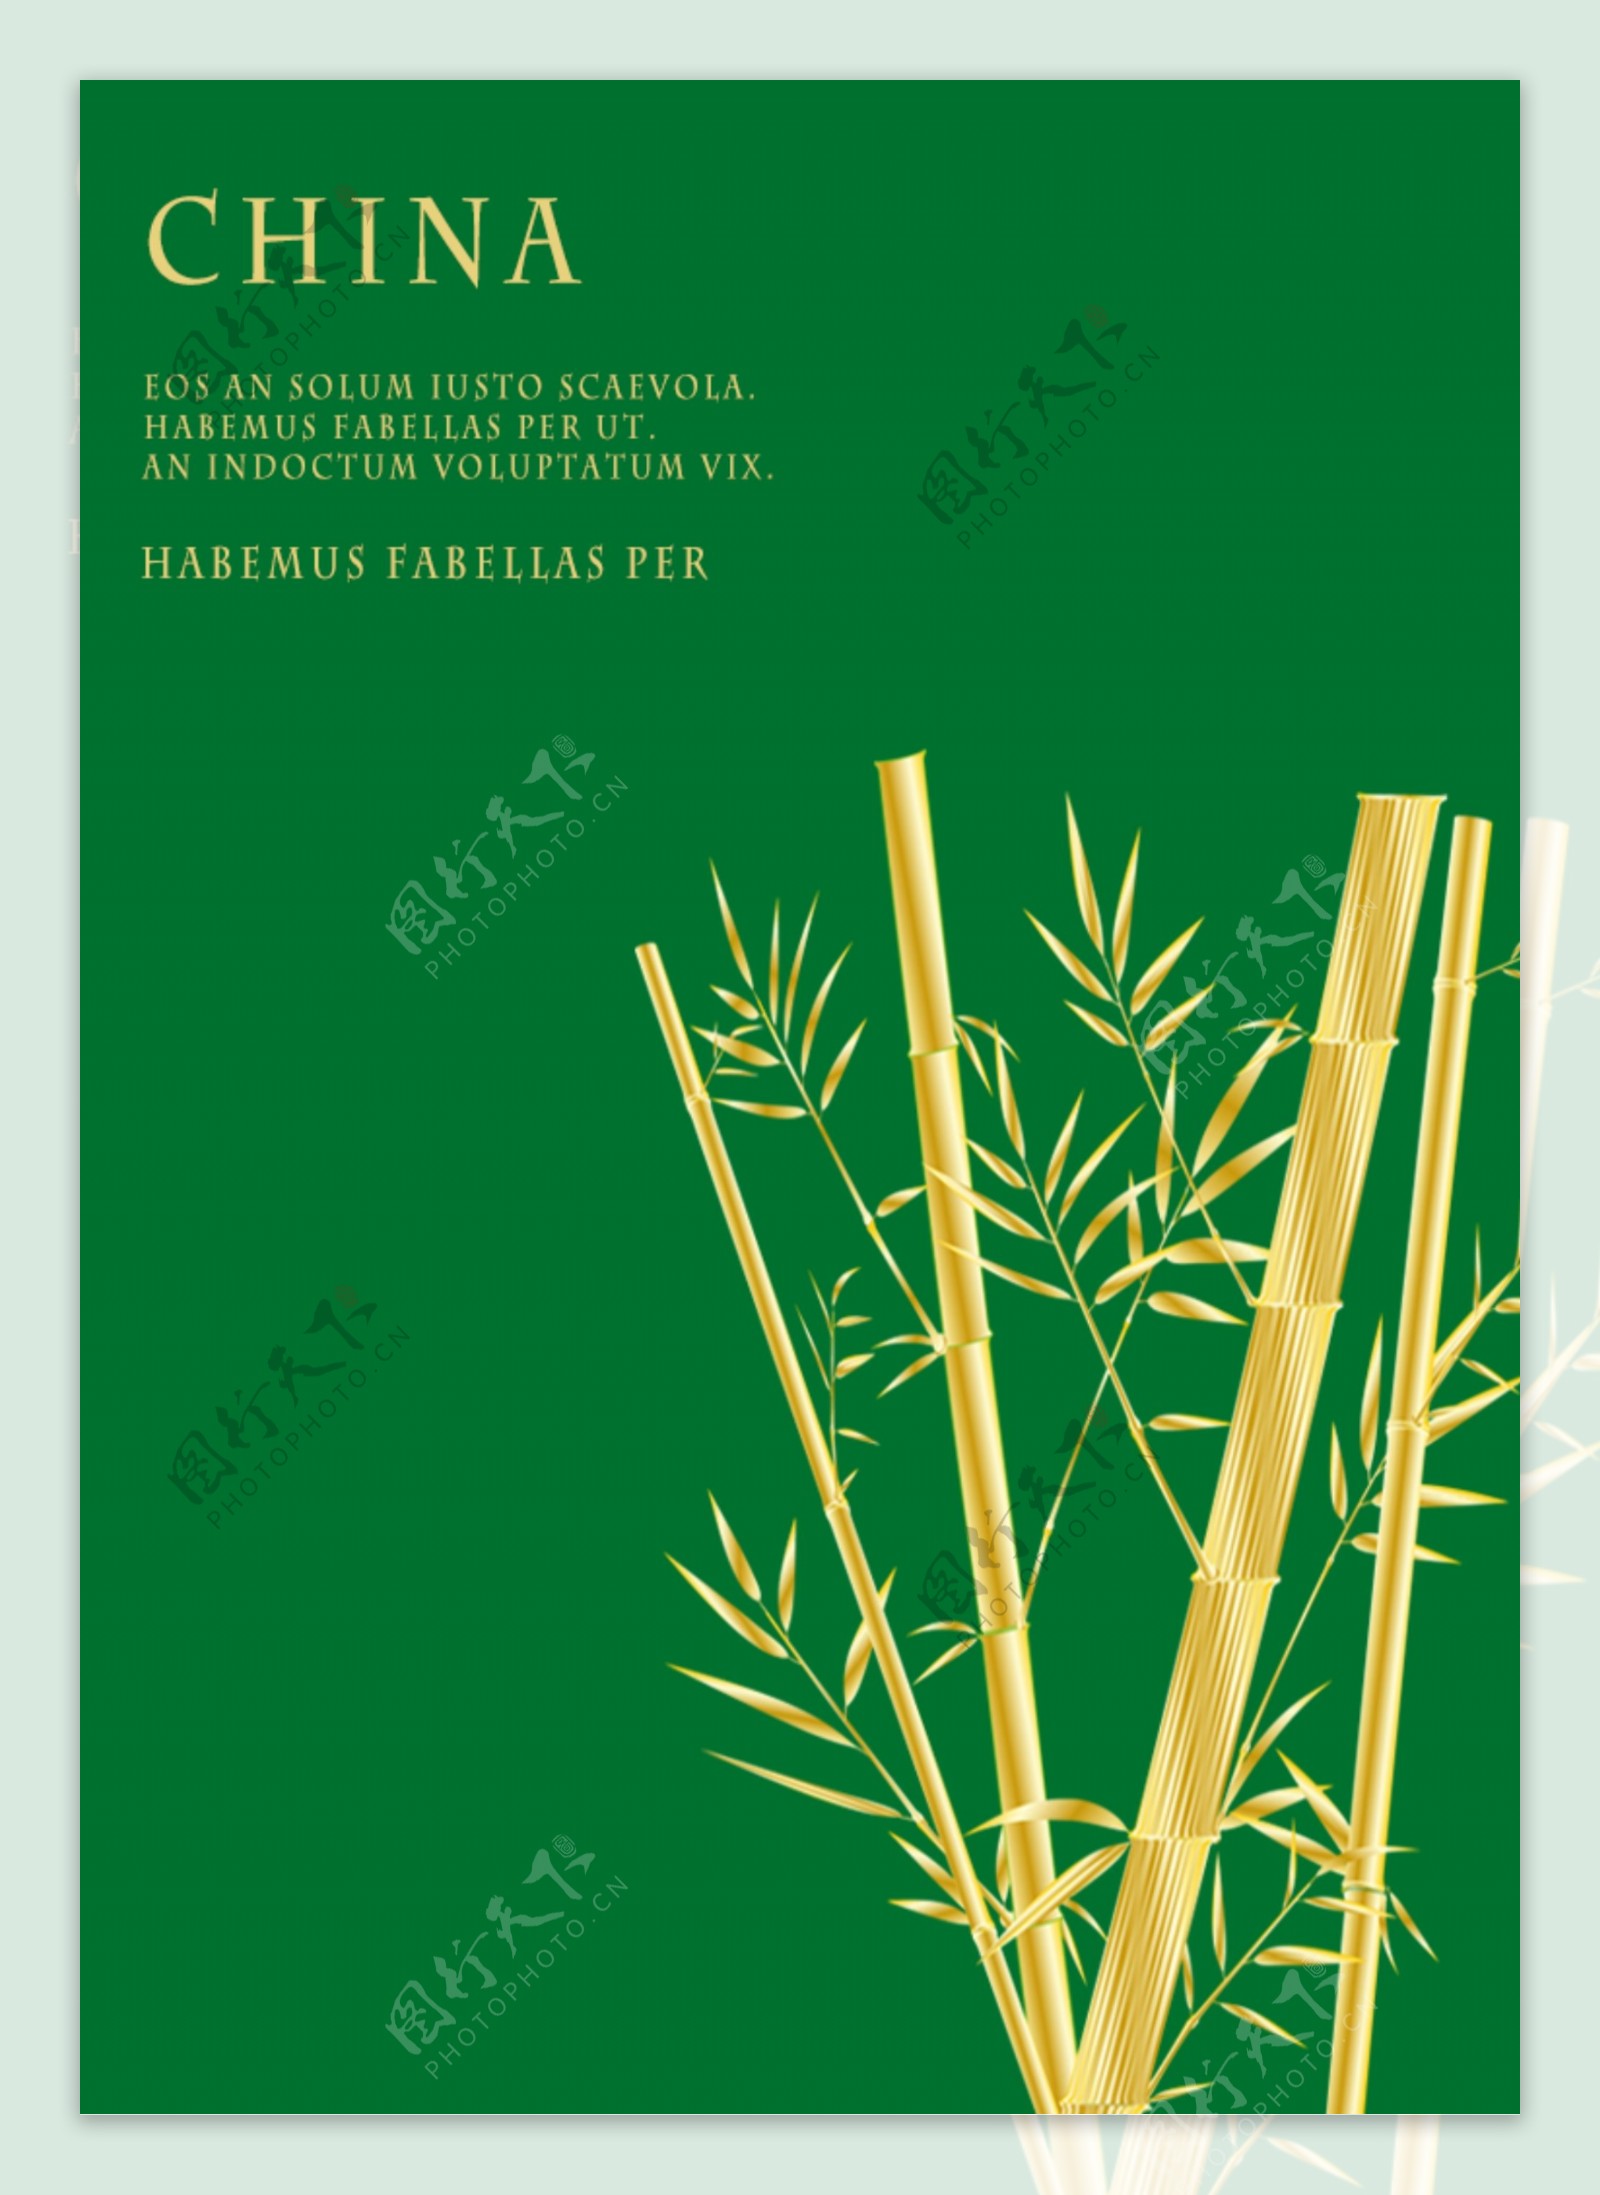 一张绿色的中国传统竹子海报